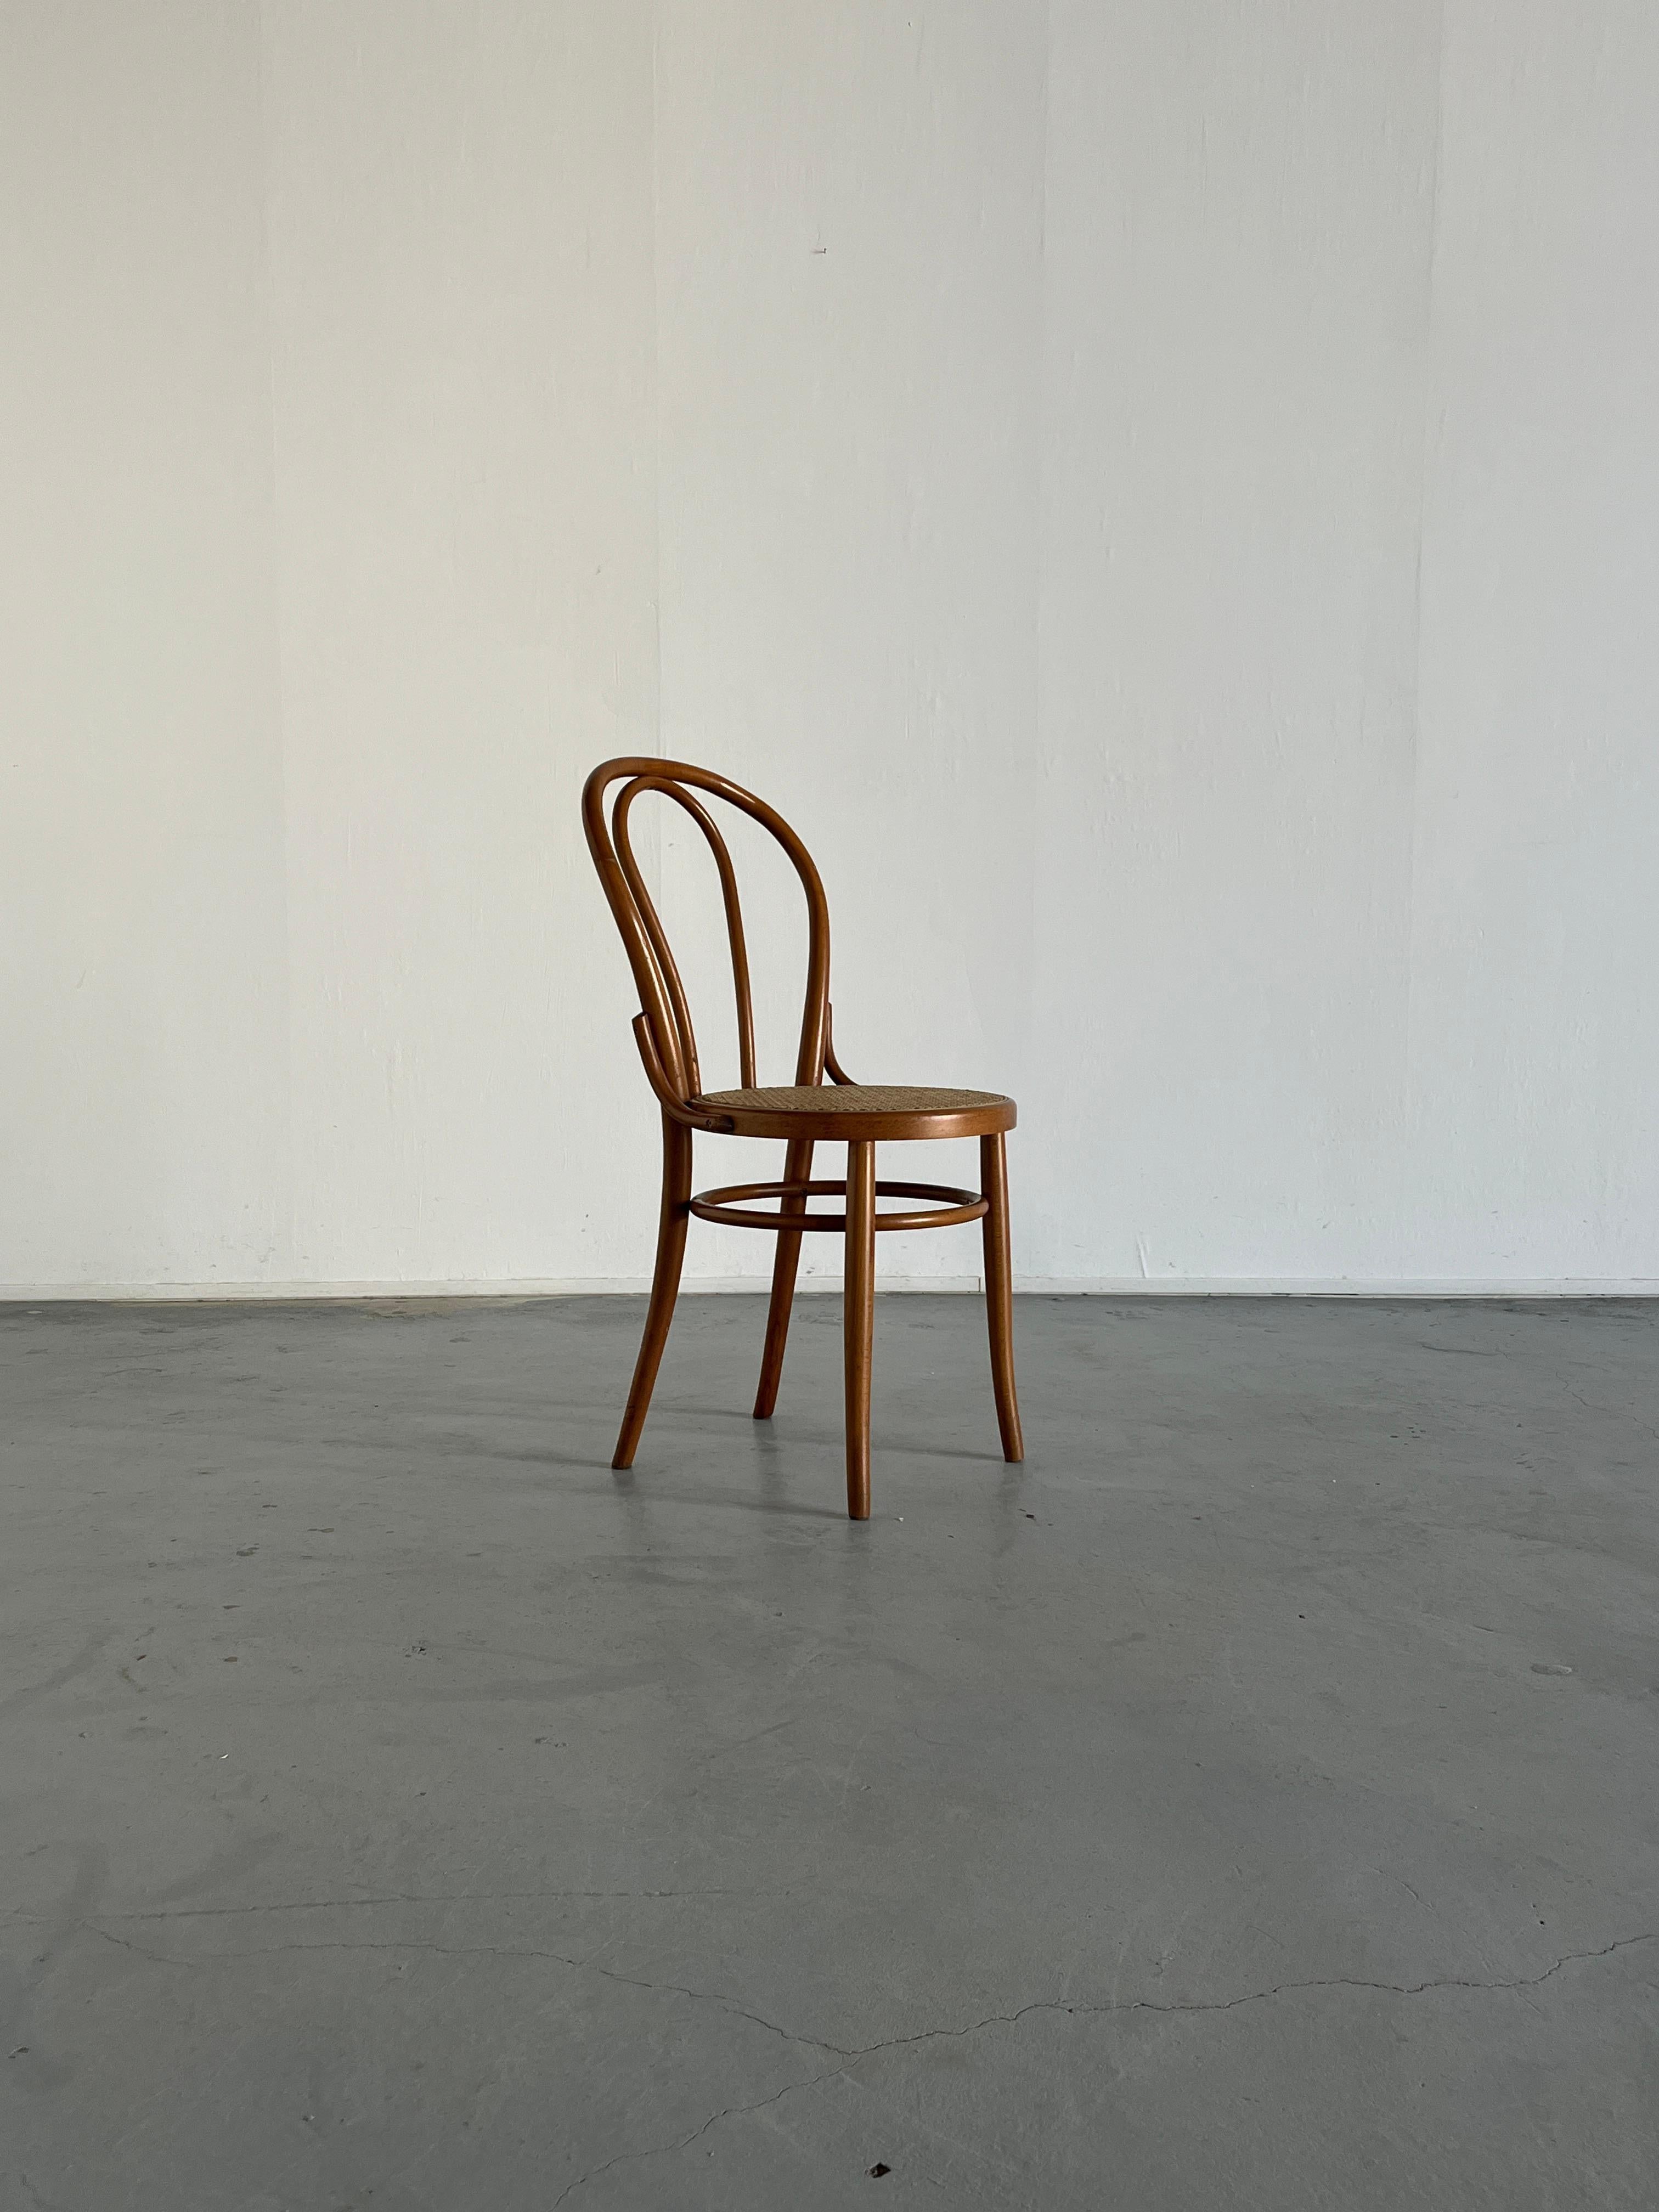 Ein schöner Thonet Bugholzstuhl aus Holz, im Stil des beliebten Modells Nr. 18.

Aufgrund der Abmessungen, des MATERIALs, des Gewichts und der Art der Schraube handelt es sich höchstwahrscheinlich um einen originalen Thonet-Stuhl Nr. 18, der in der